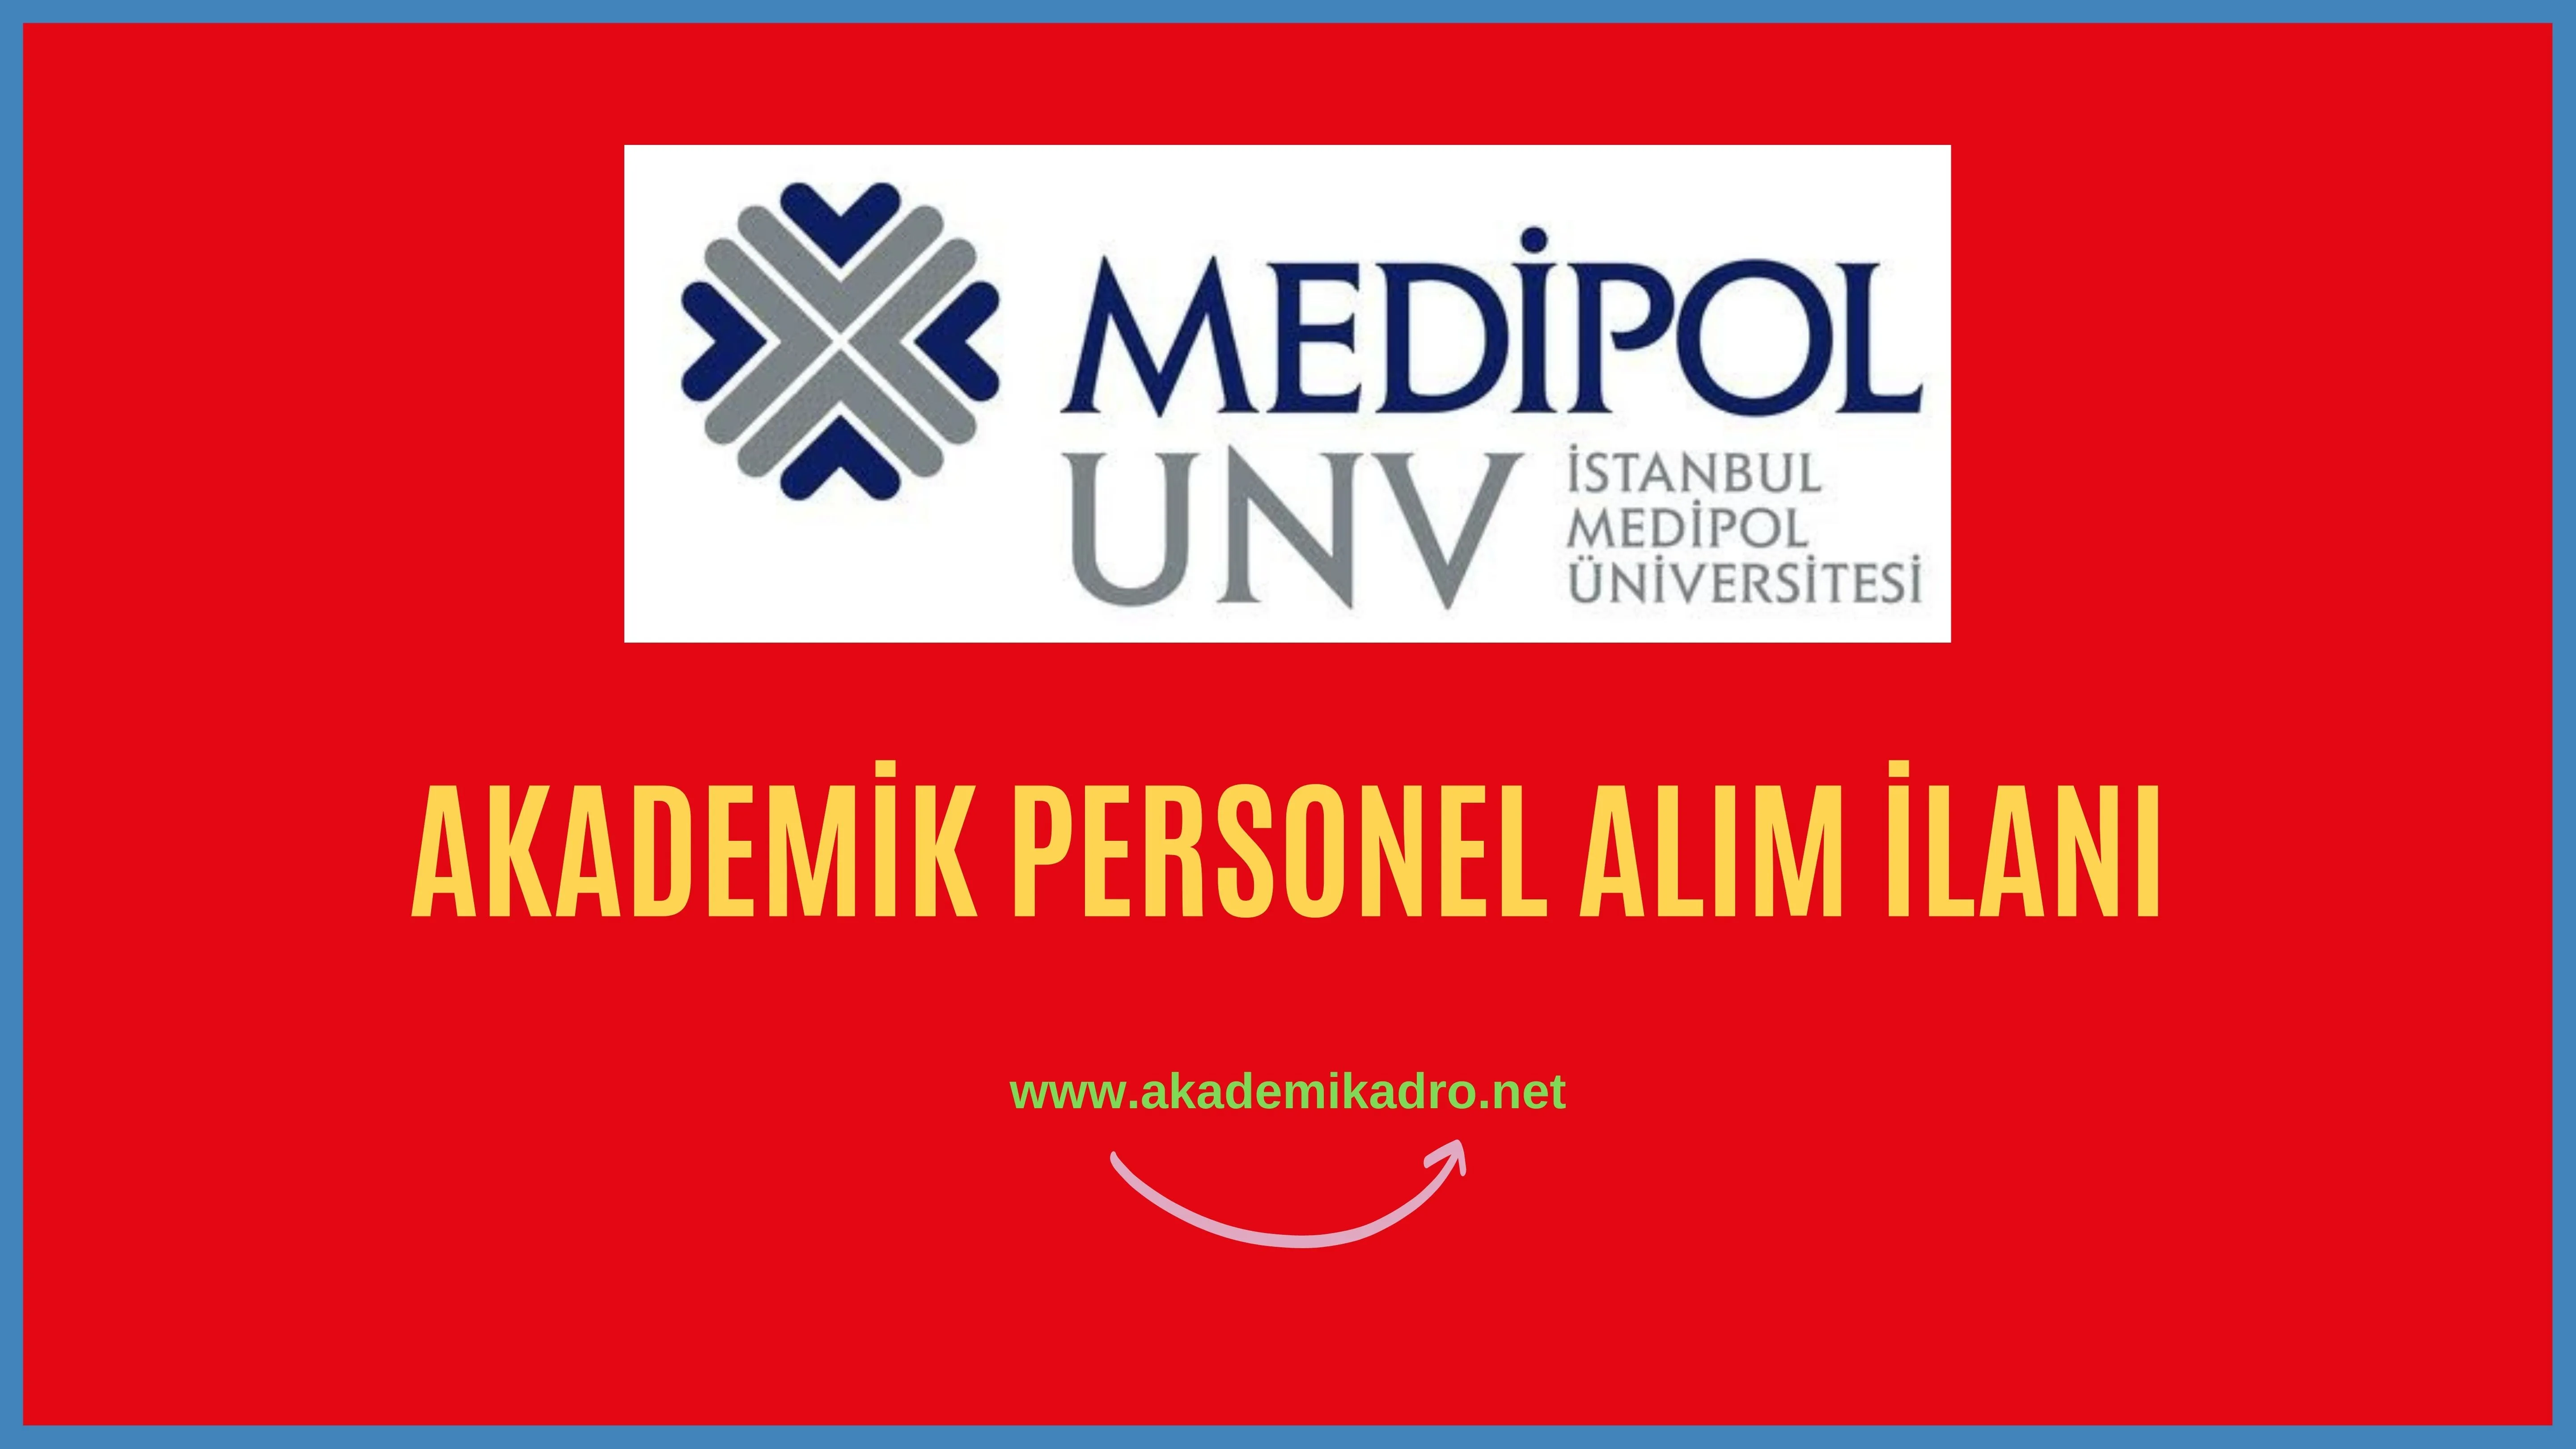 İstanbul Medipol Üniversitesi birçok alandan 15 Akademik personel alacak.